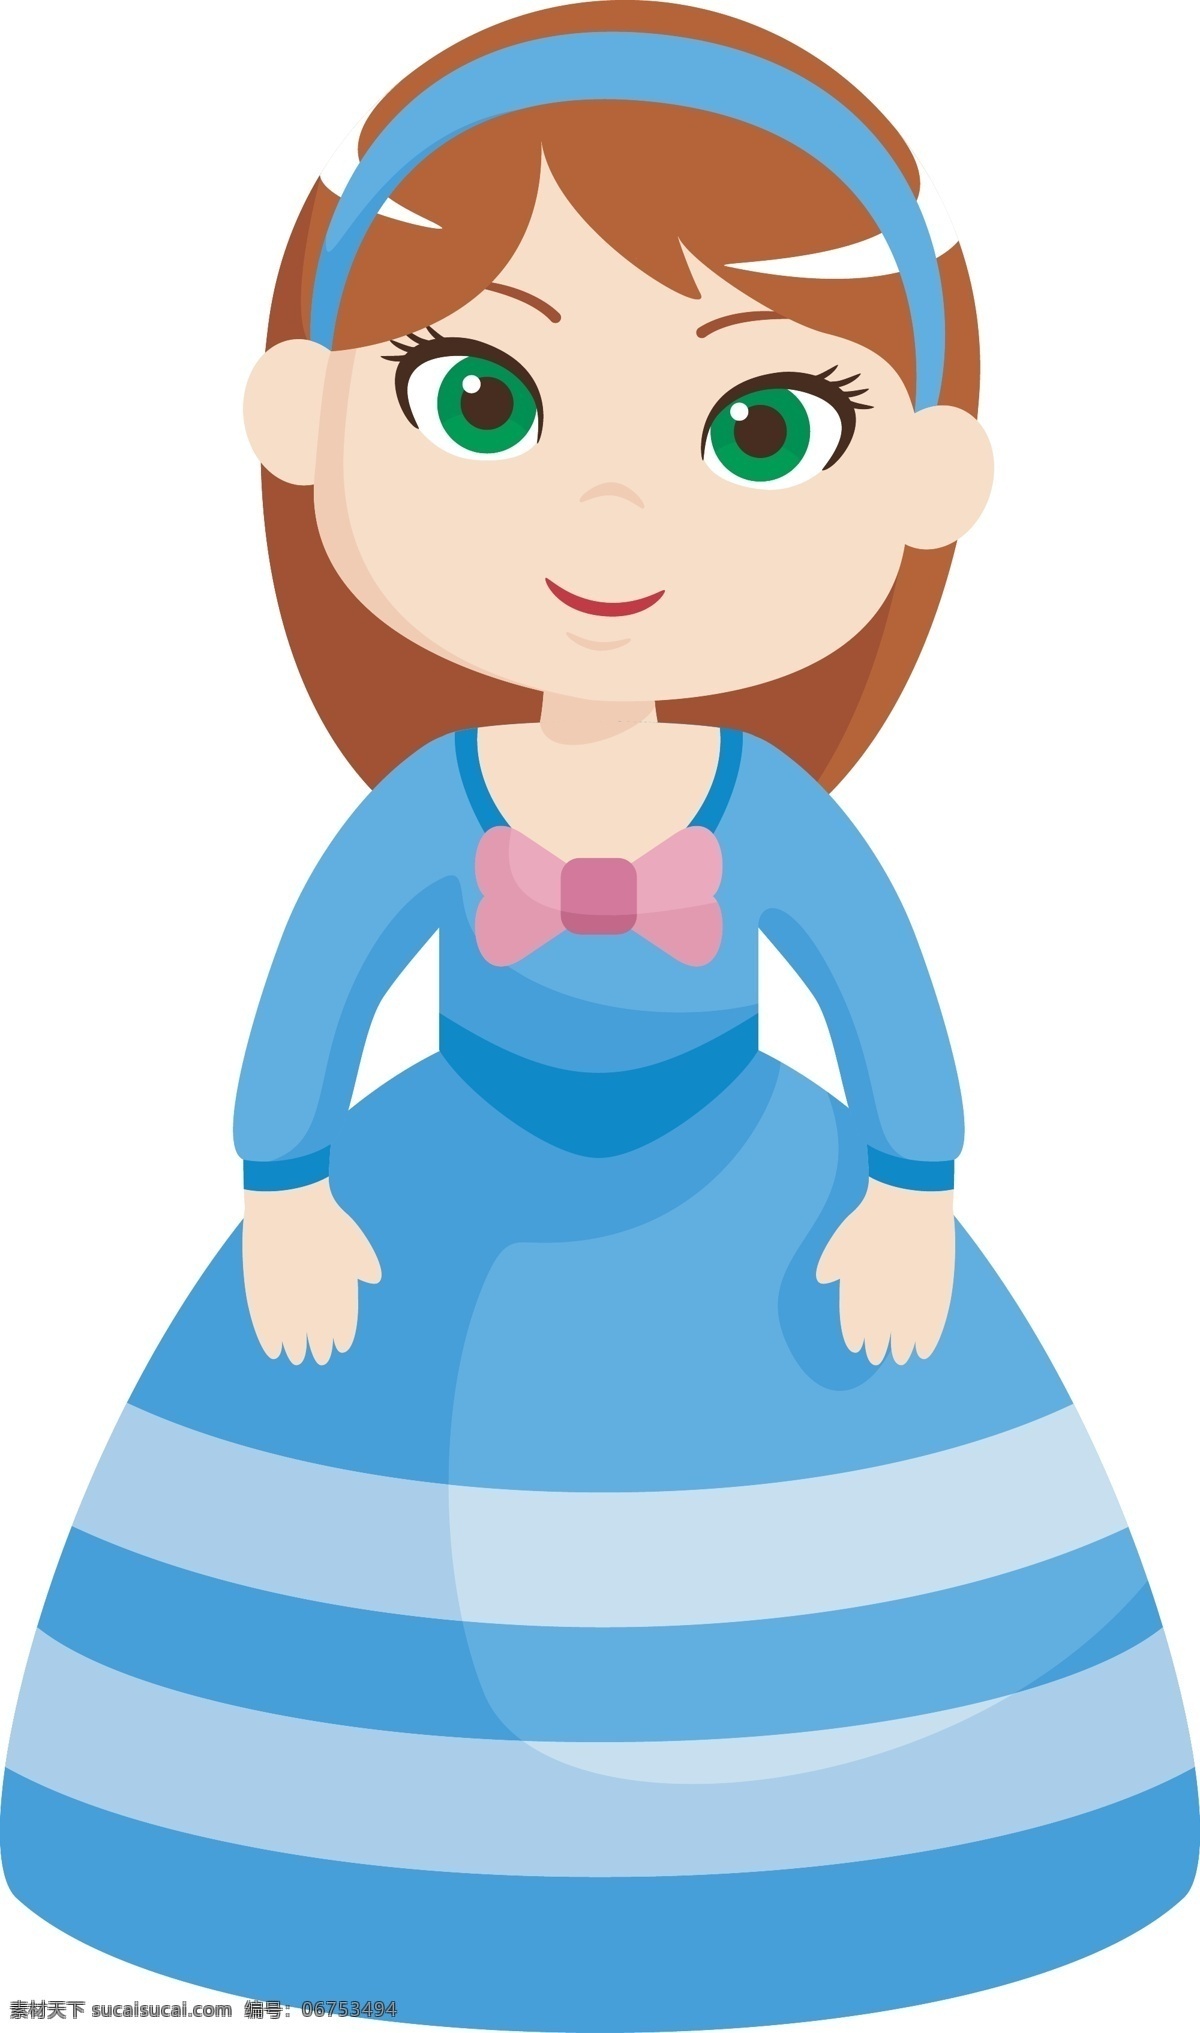 卡通 矢量 身穿 蓝色 礼服 美丽 公主 卡通矢量 蓝色礼服 童话世界 公主设计 人物 裙子 童话 插画 王子 城堡 海报